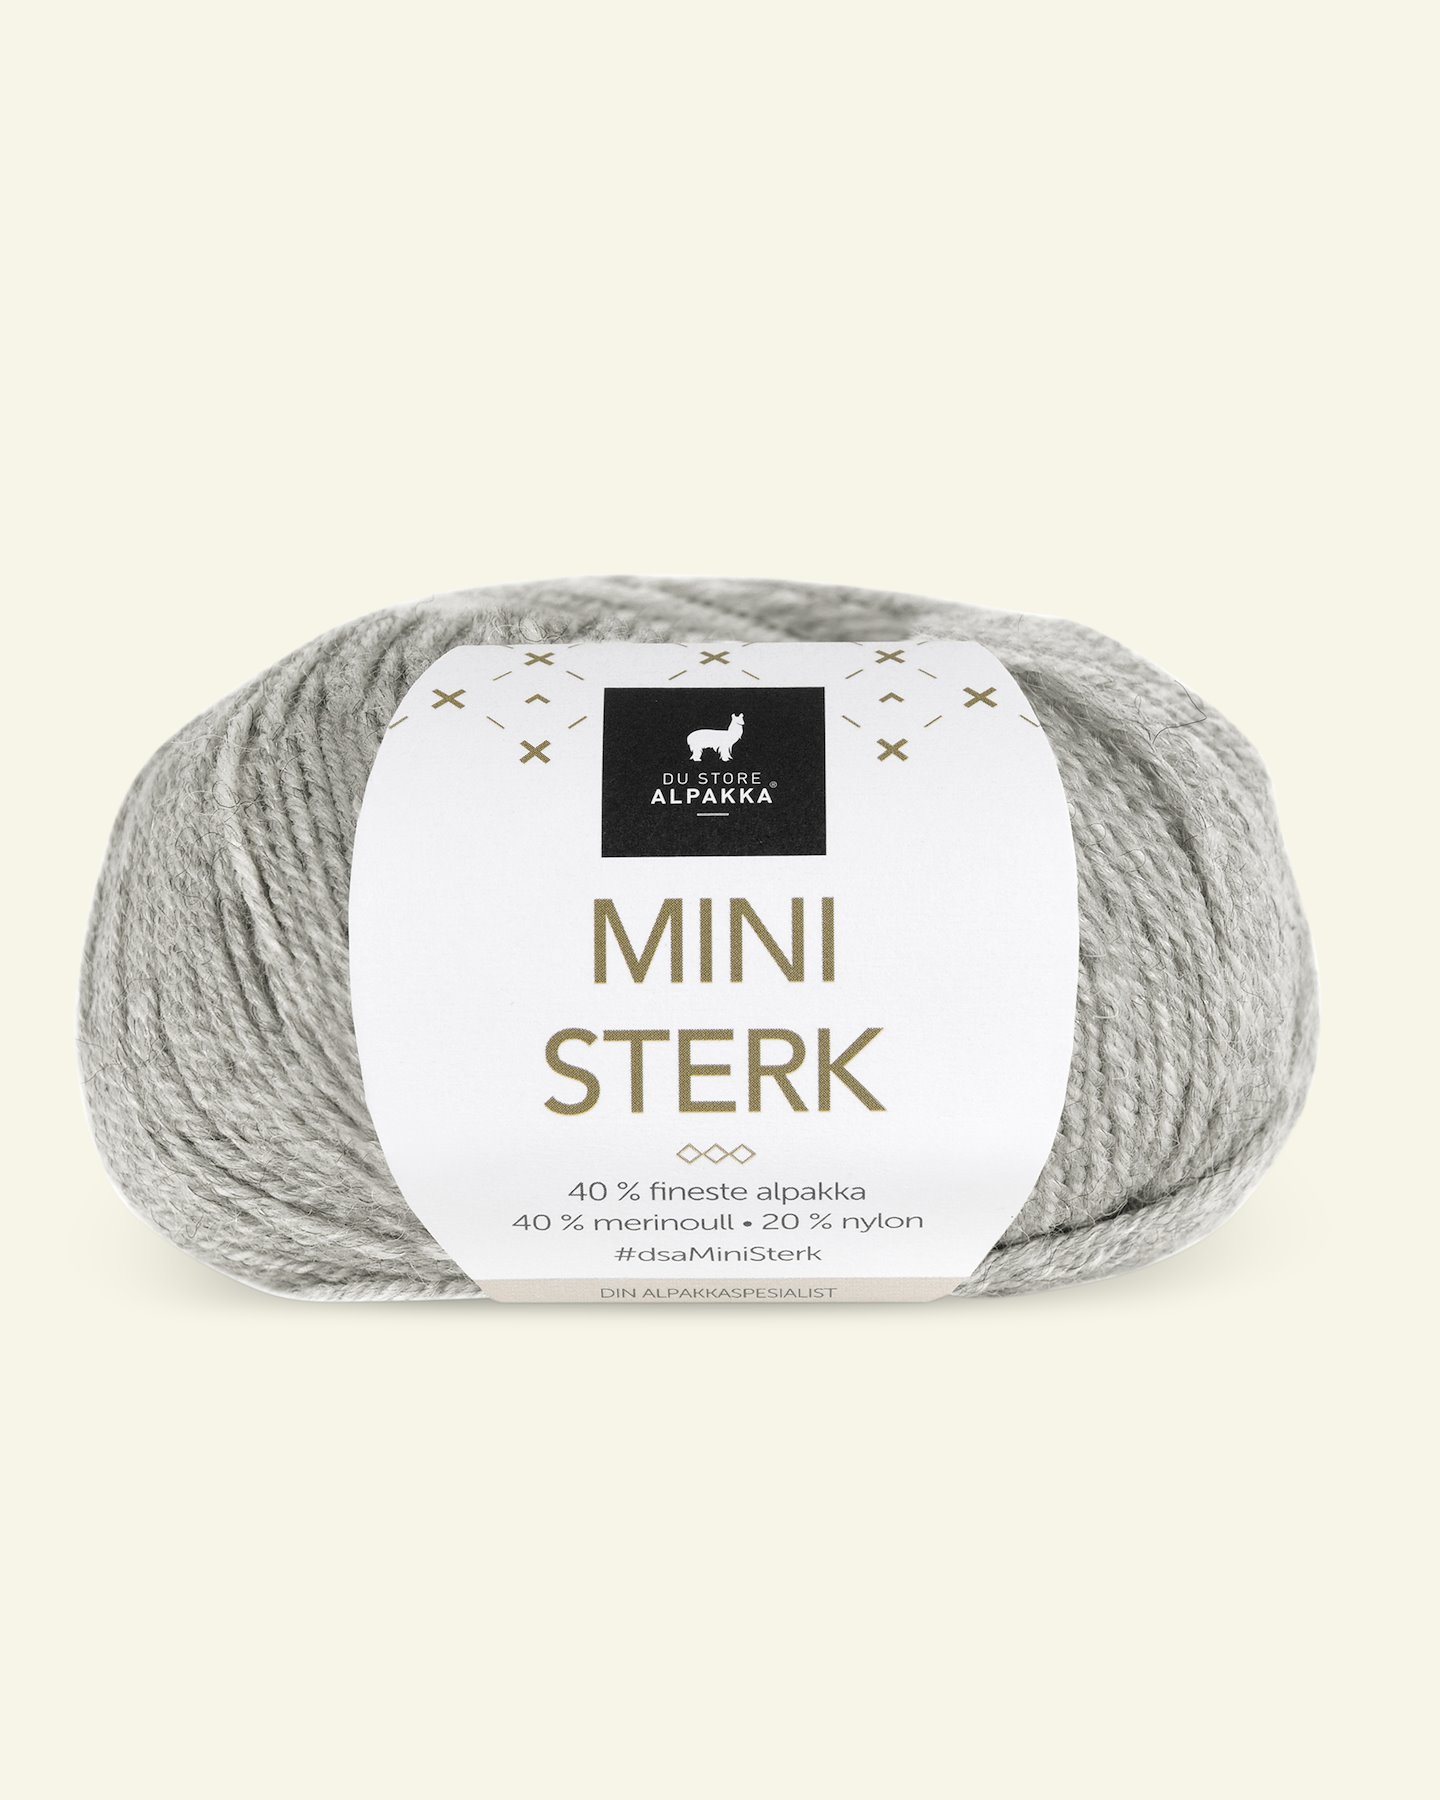 Du Store Alpakka, alpakka merino blandingsgarn "Mini Sterk", lys grå mel. (841) 90000632_pack